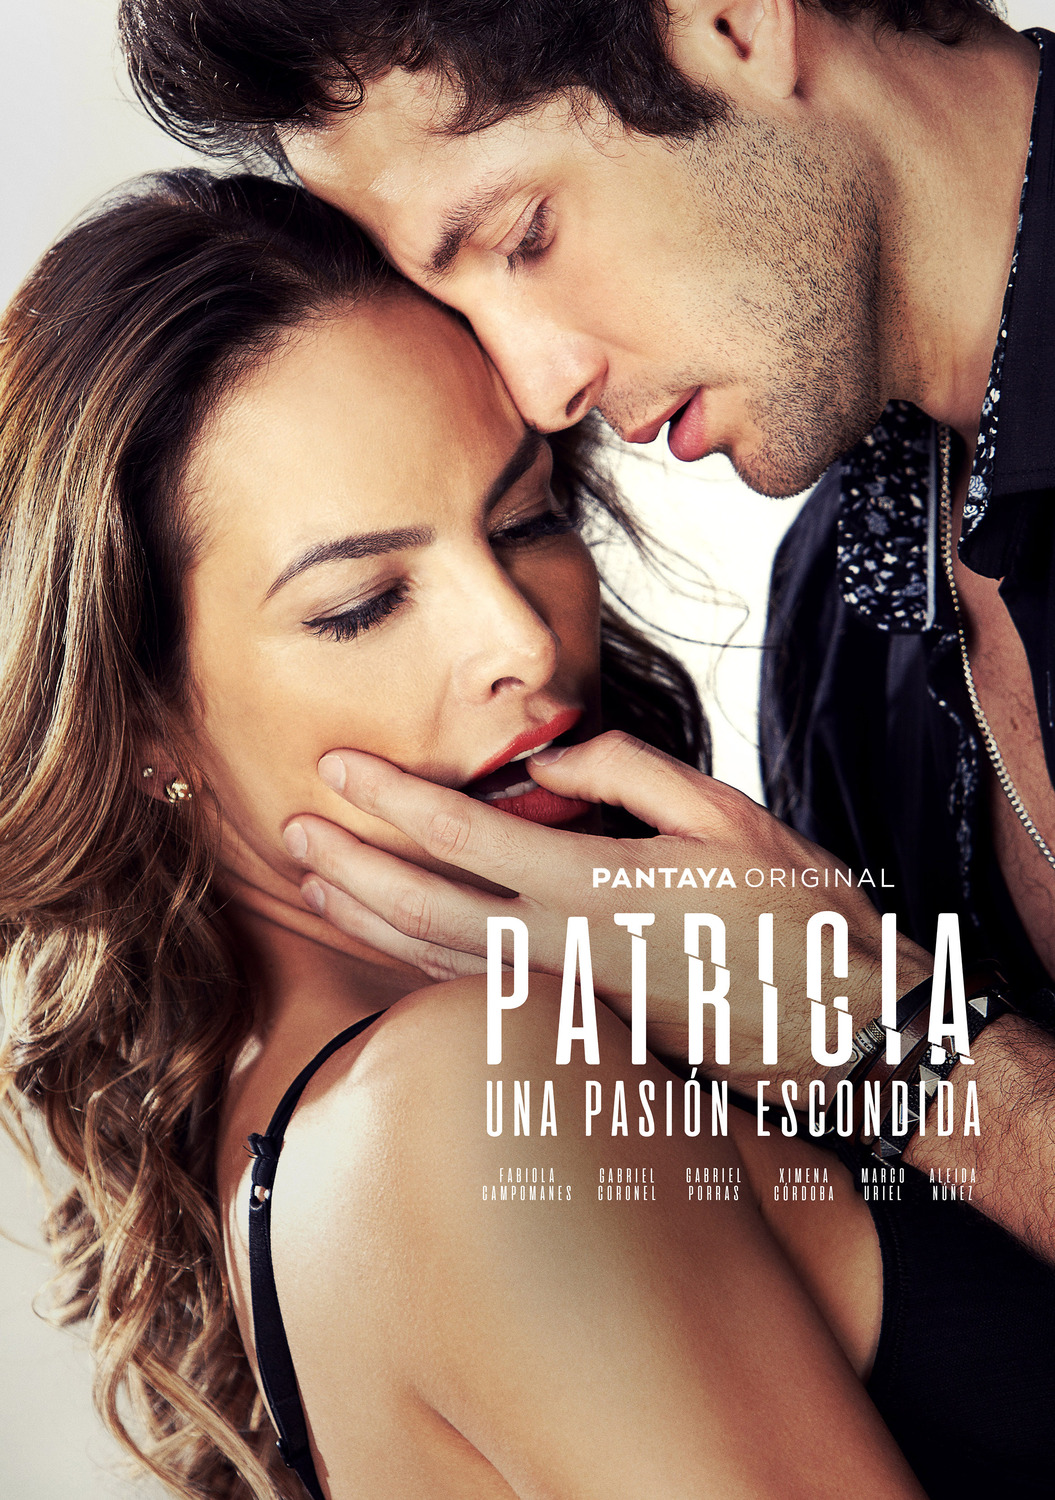 Extra Large TV Poster Image for Patricia, Secretos de una Pasión (#1 of 4)